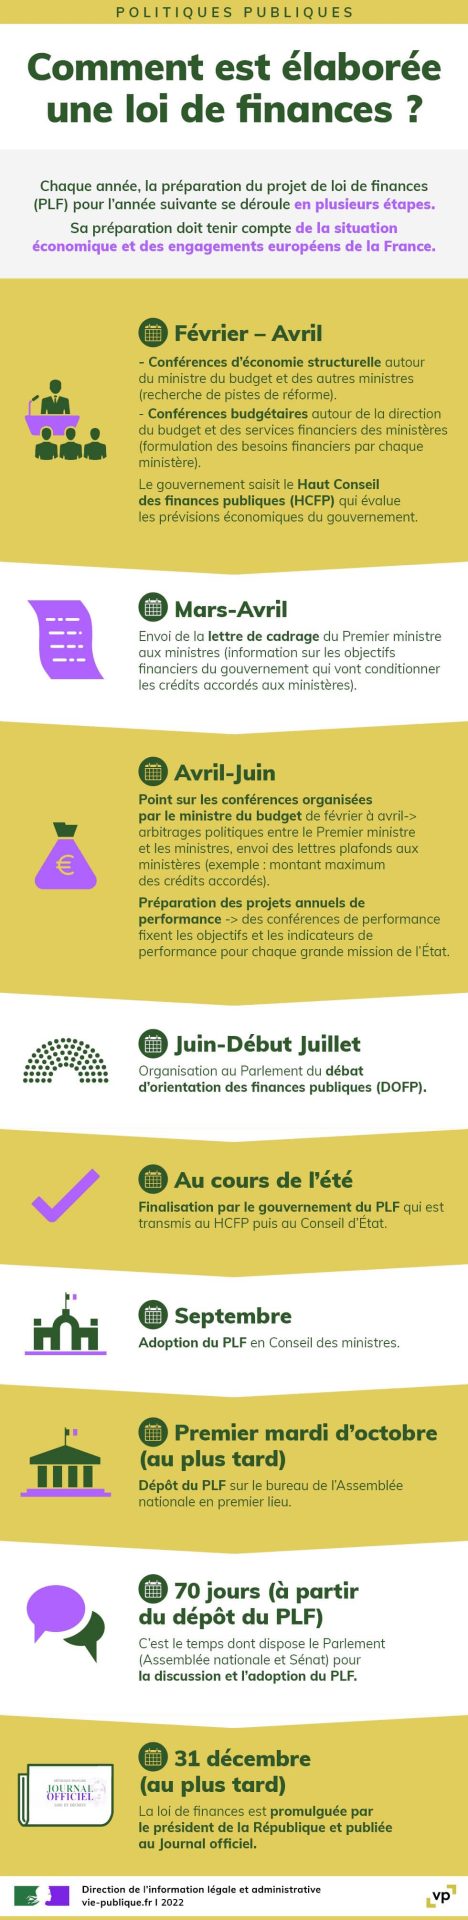 Comment est élaborée une loi de finance ? (infographie source vie-publique.fr)